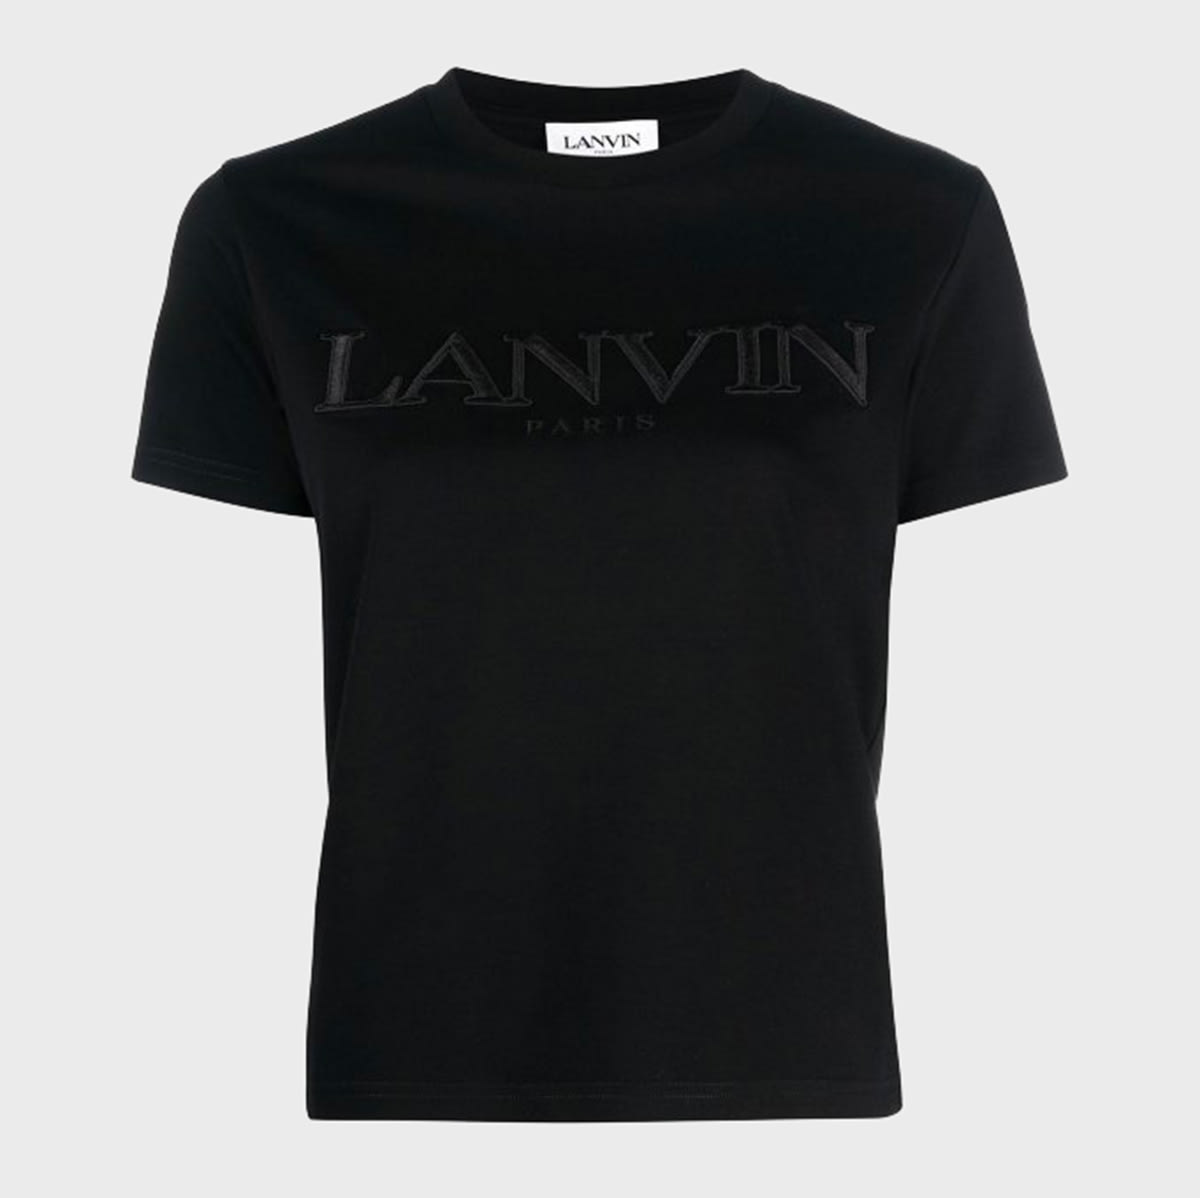 Lanvin Black Cotton T-shirt